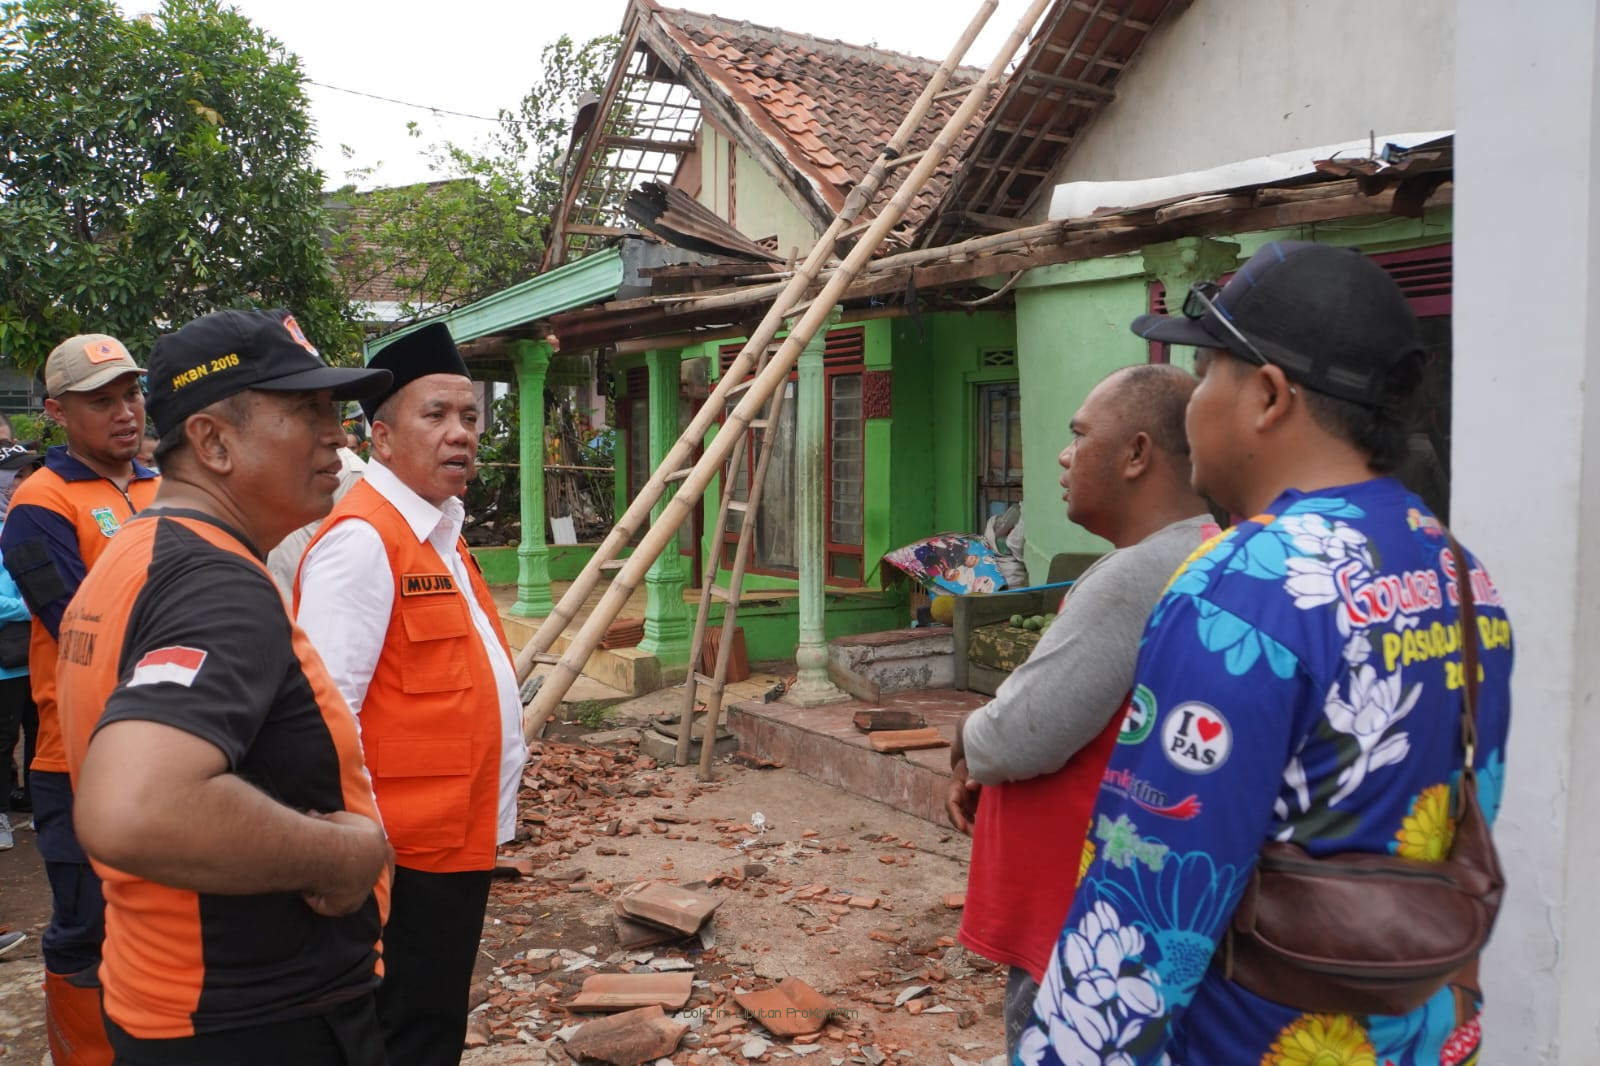   Tinjau Lokasi Angin Puting Beliung di Sukorejo, Pemkab Pasuruan Distribusikan Bansos Bagi Warga Terdampak Bencana